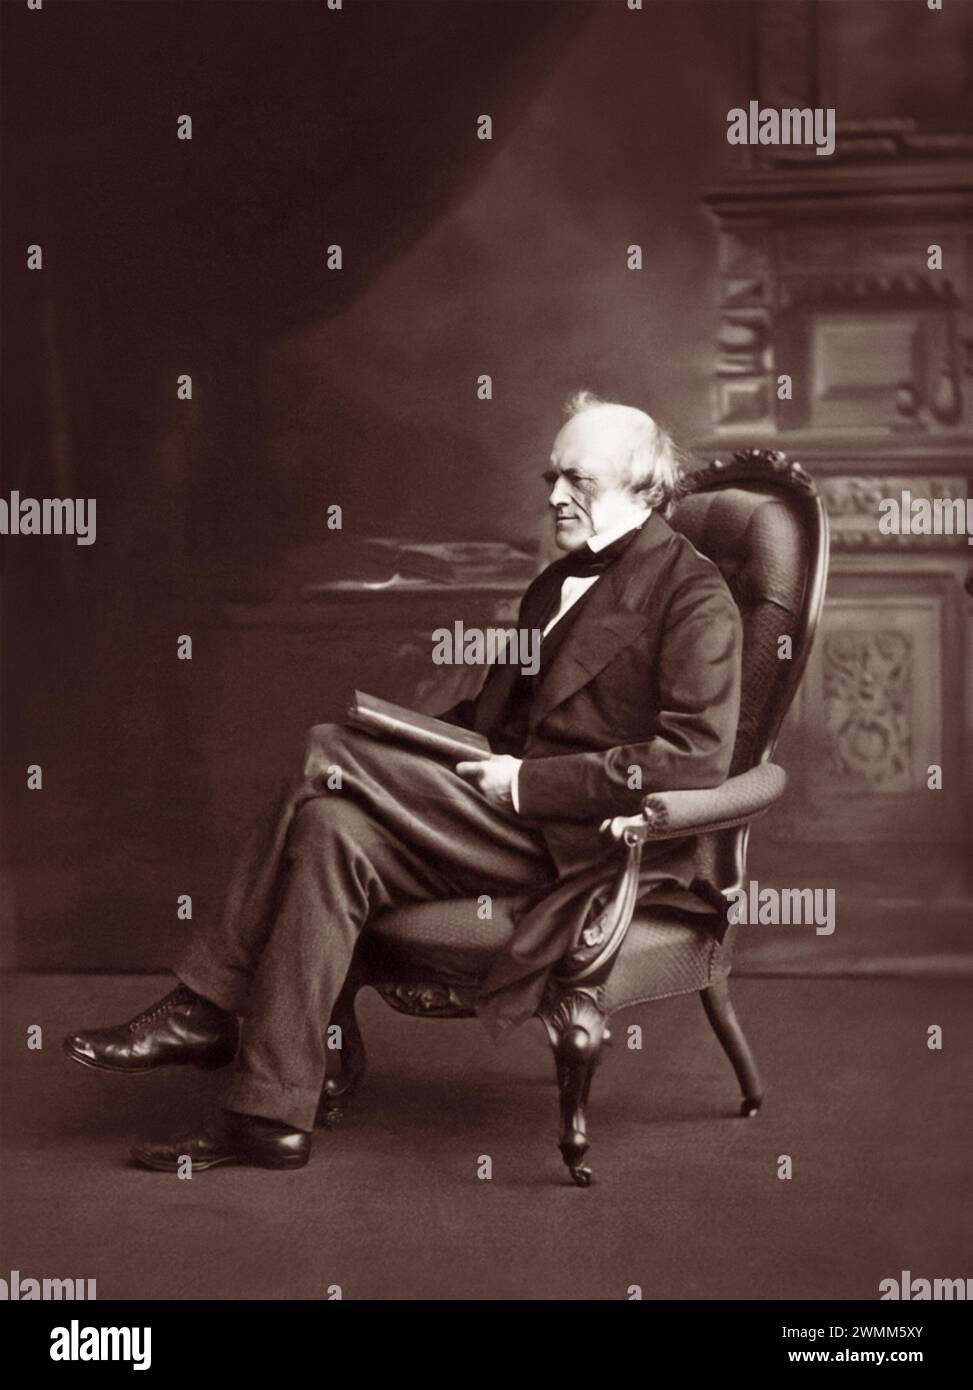 Sir Charles Lyell, i baronetto, FRS (1797-1875) è stato un avvocato britannico e il più importante geologo del suo tempo. È noto soprattutto per il suo libro Principles of Geology che ha reso popolare il concetto di uniformitarismo. Foto Stock